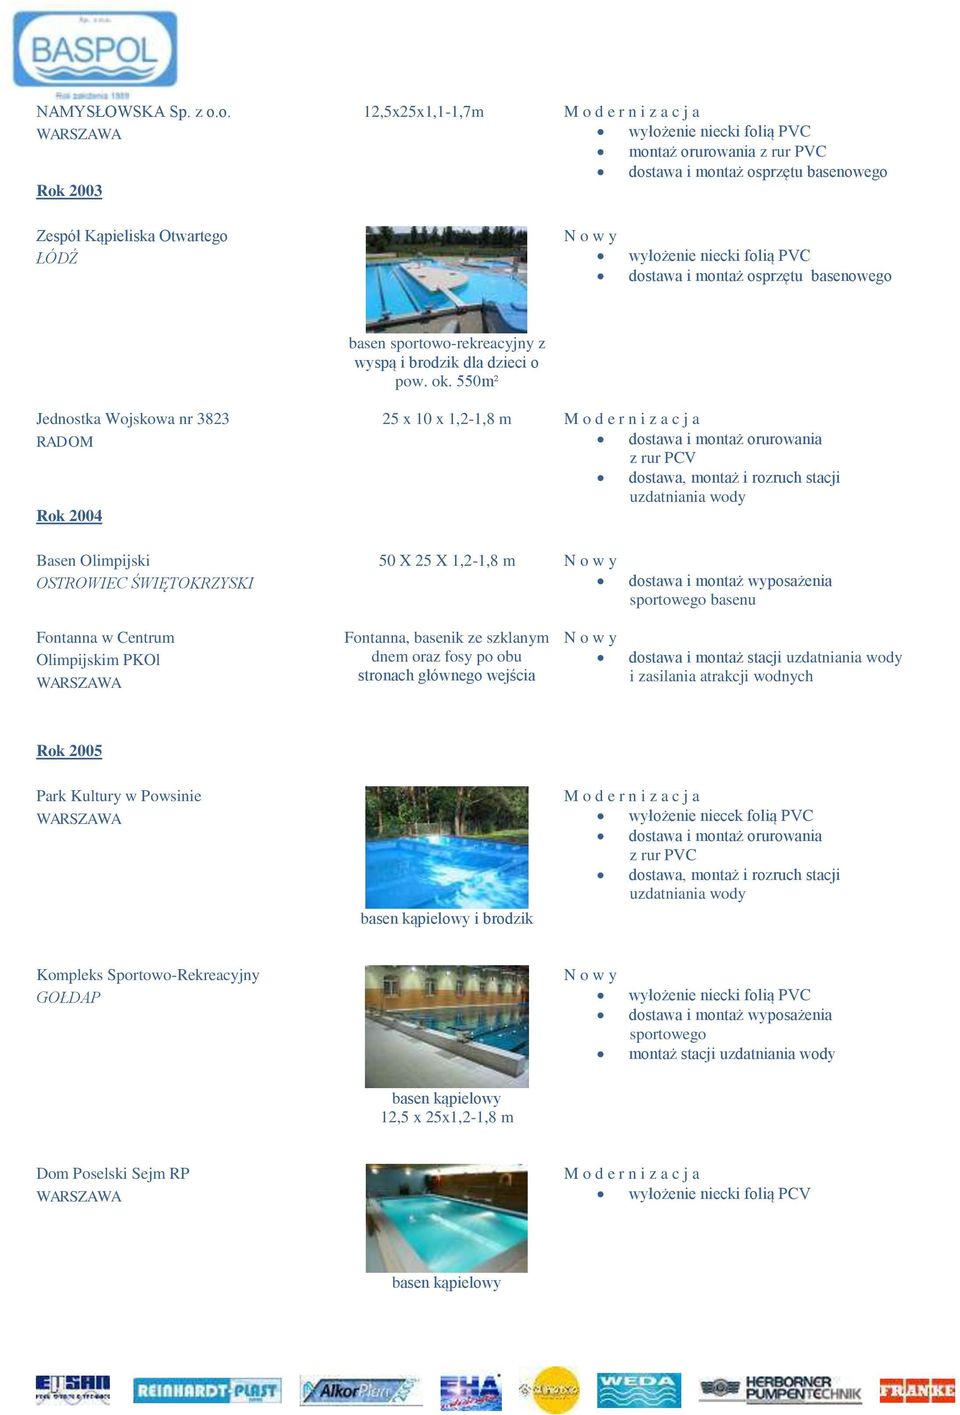 X 25 X 1,2-1,8 m dostawa i montaż wyposażenia sportowego basenu Fontanna w Centrum Olimpijskim PKOl Fontanna, basenik ze szklanym dnem oraz fosy po obu stronach głównego wejścia dostawa i montaż